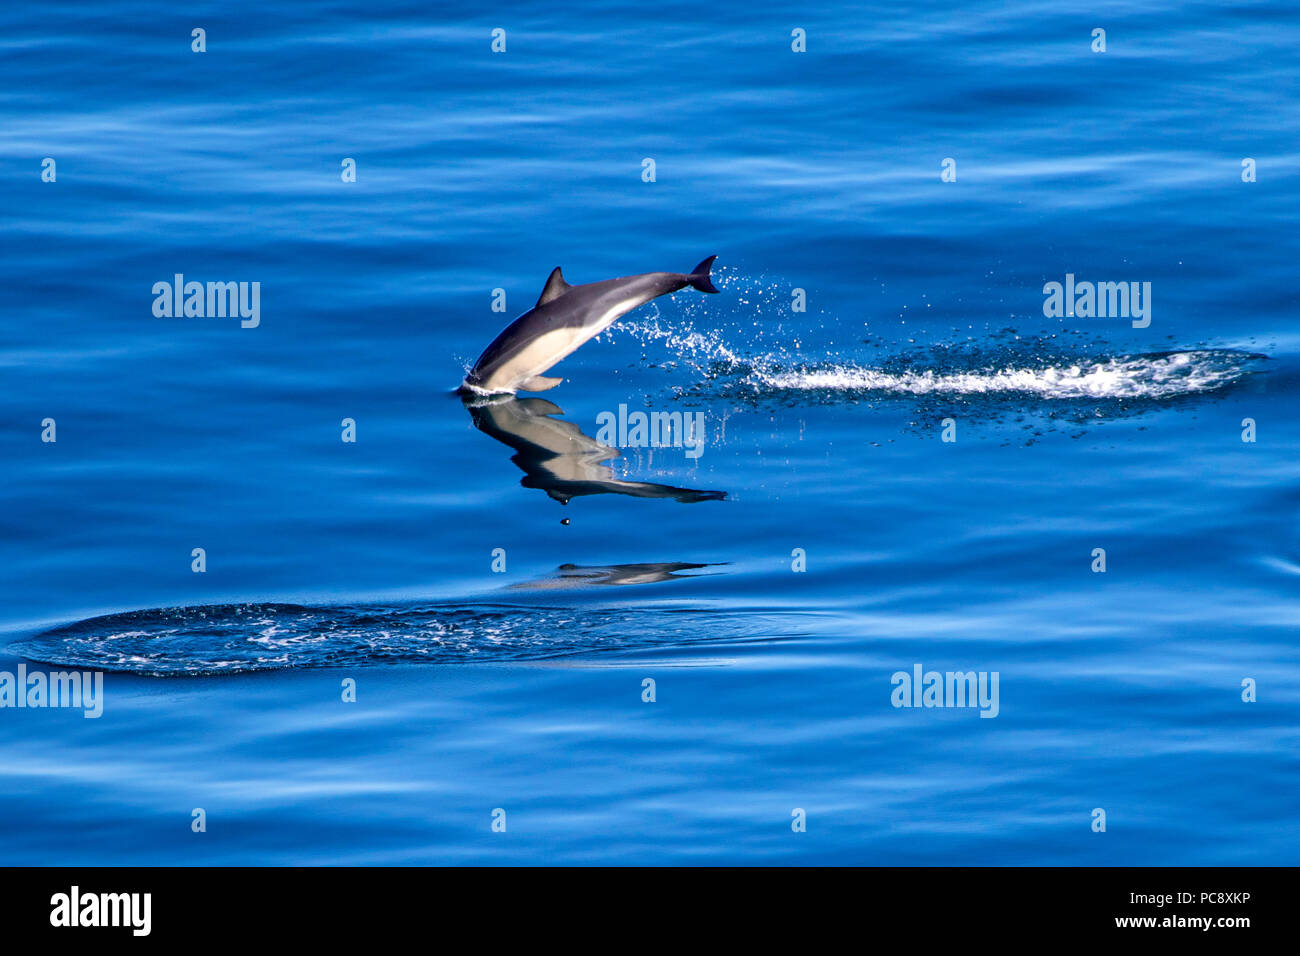 Cortocircuito picuda delfín común Delphinus delphis saltando fuera de la calma azul mar Mediterráneo Foto de stock